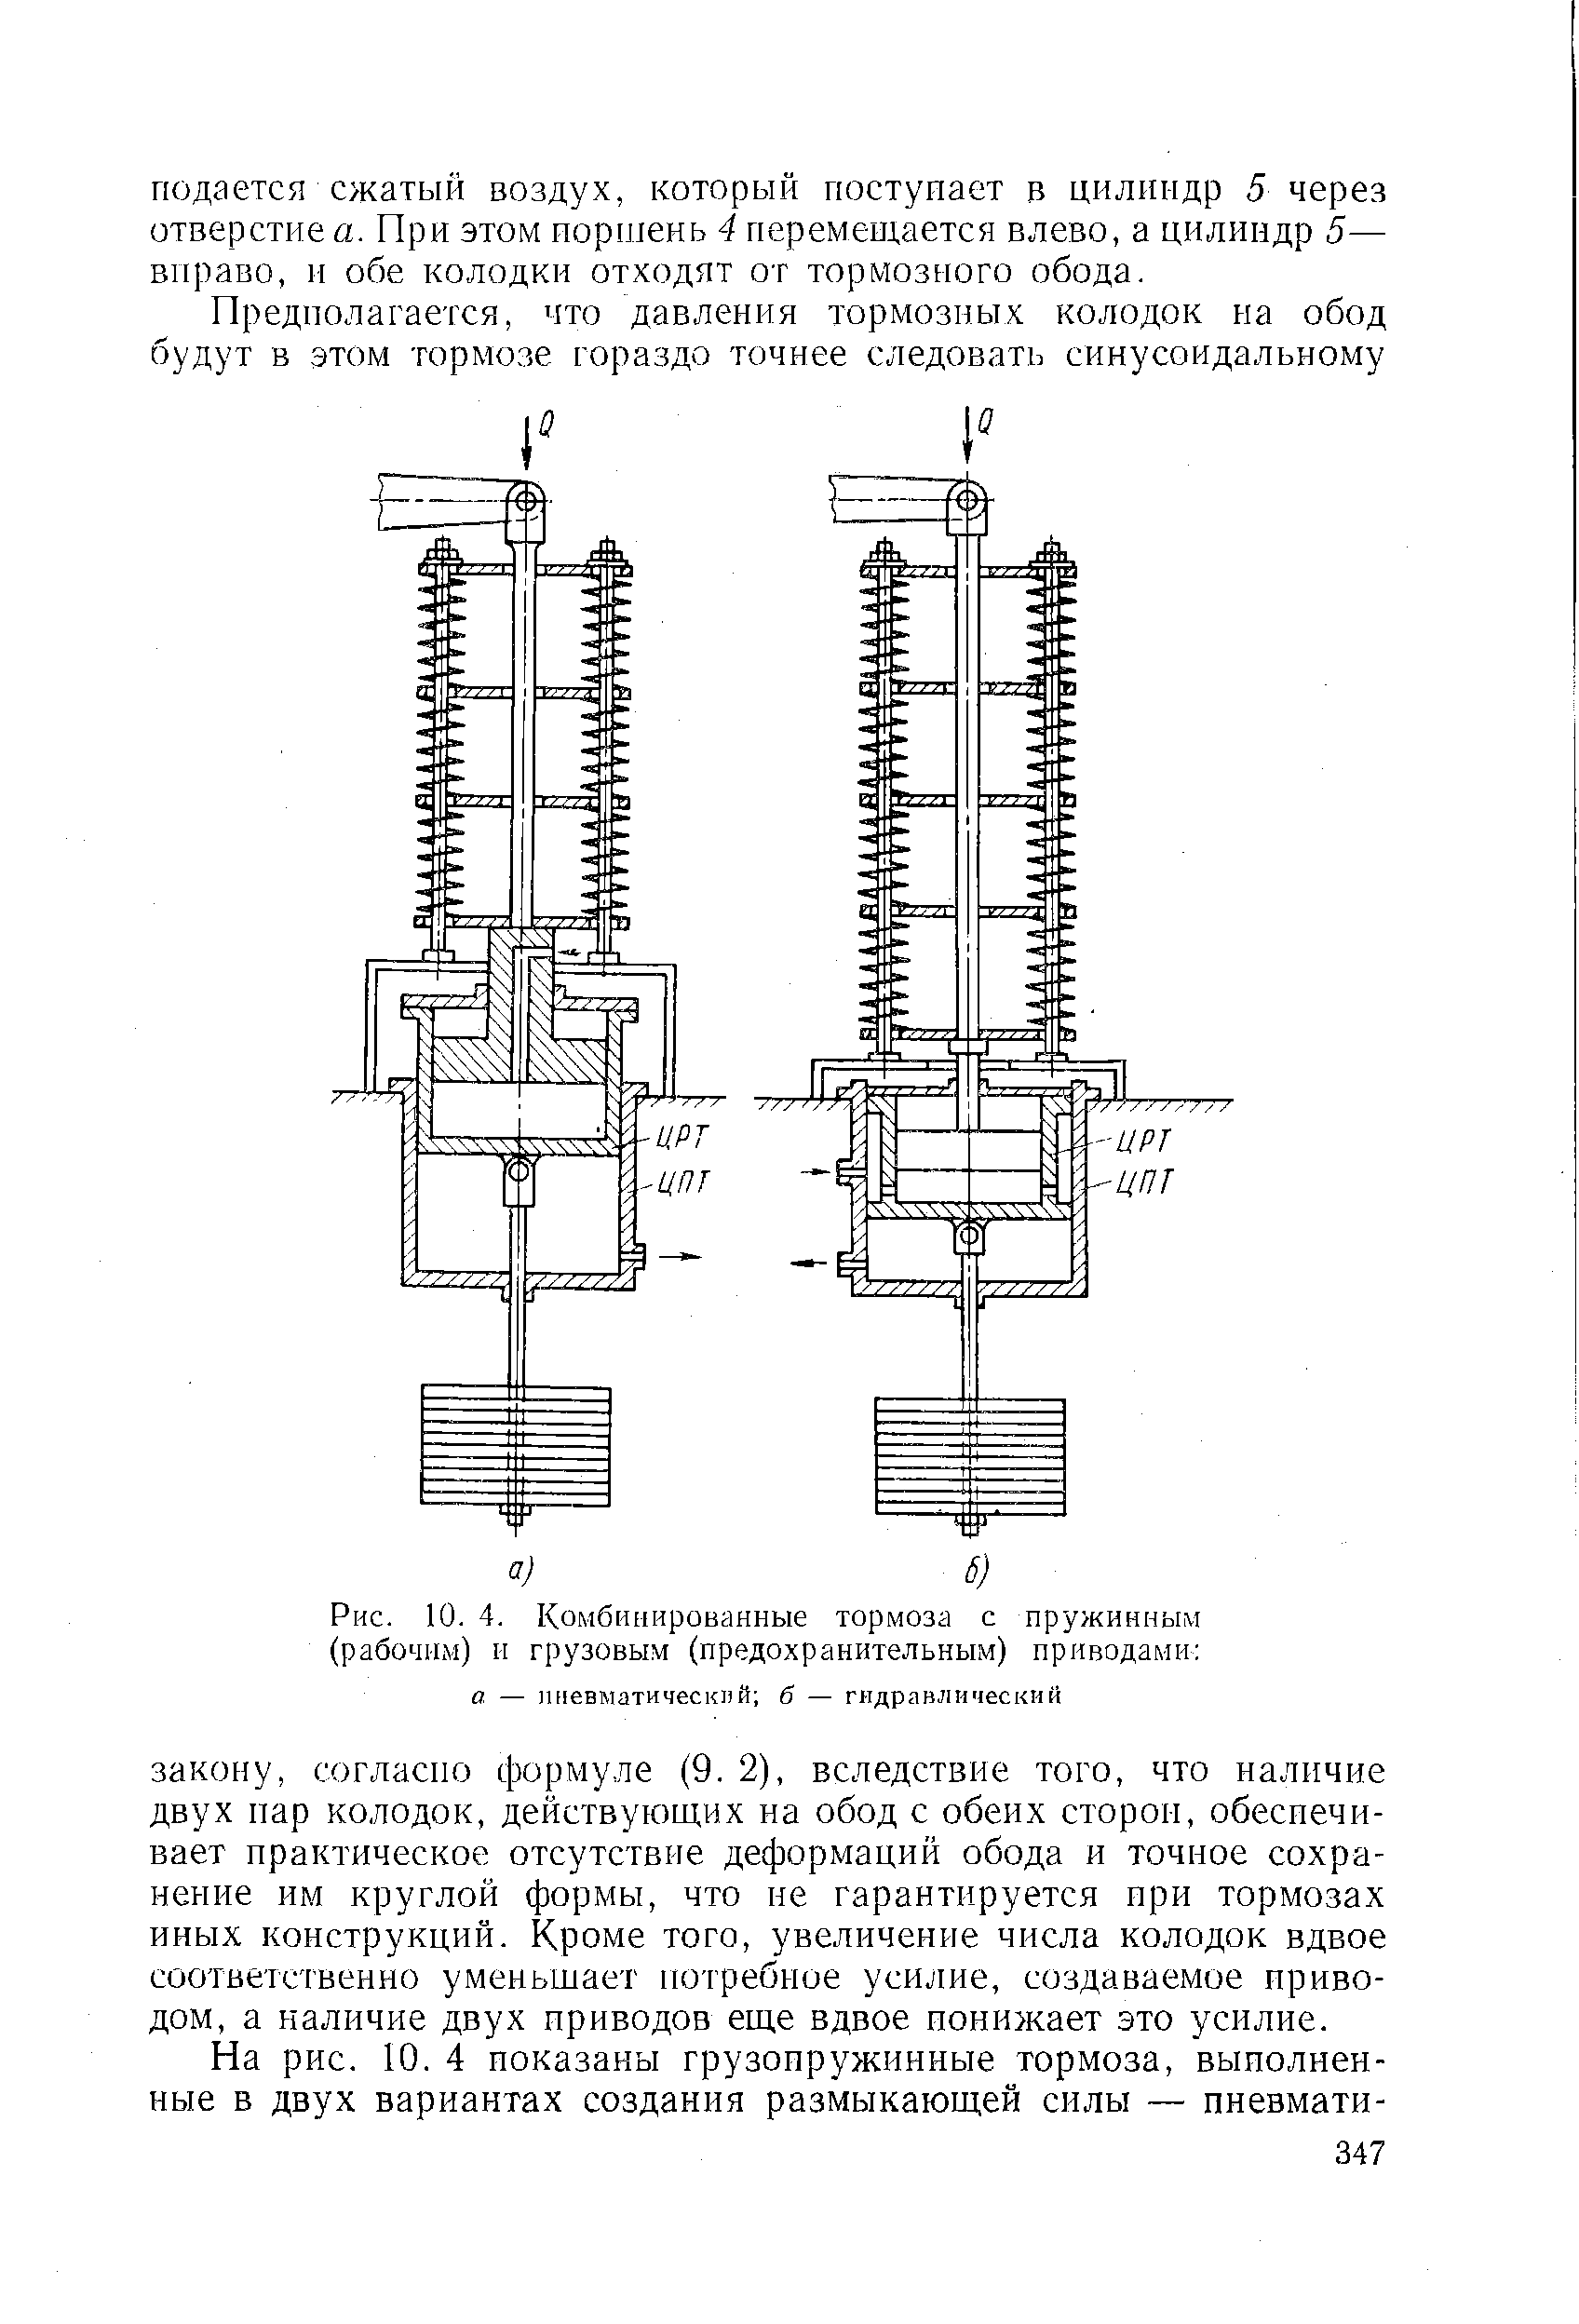 Рис. 10. 4. Комбинированные тормоза с пружинным (рабочим) II грузовым (предохранительным) приводами 
